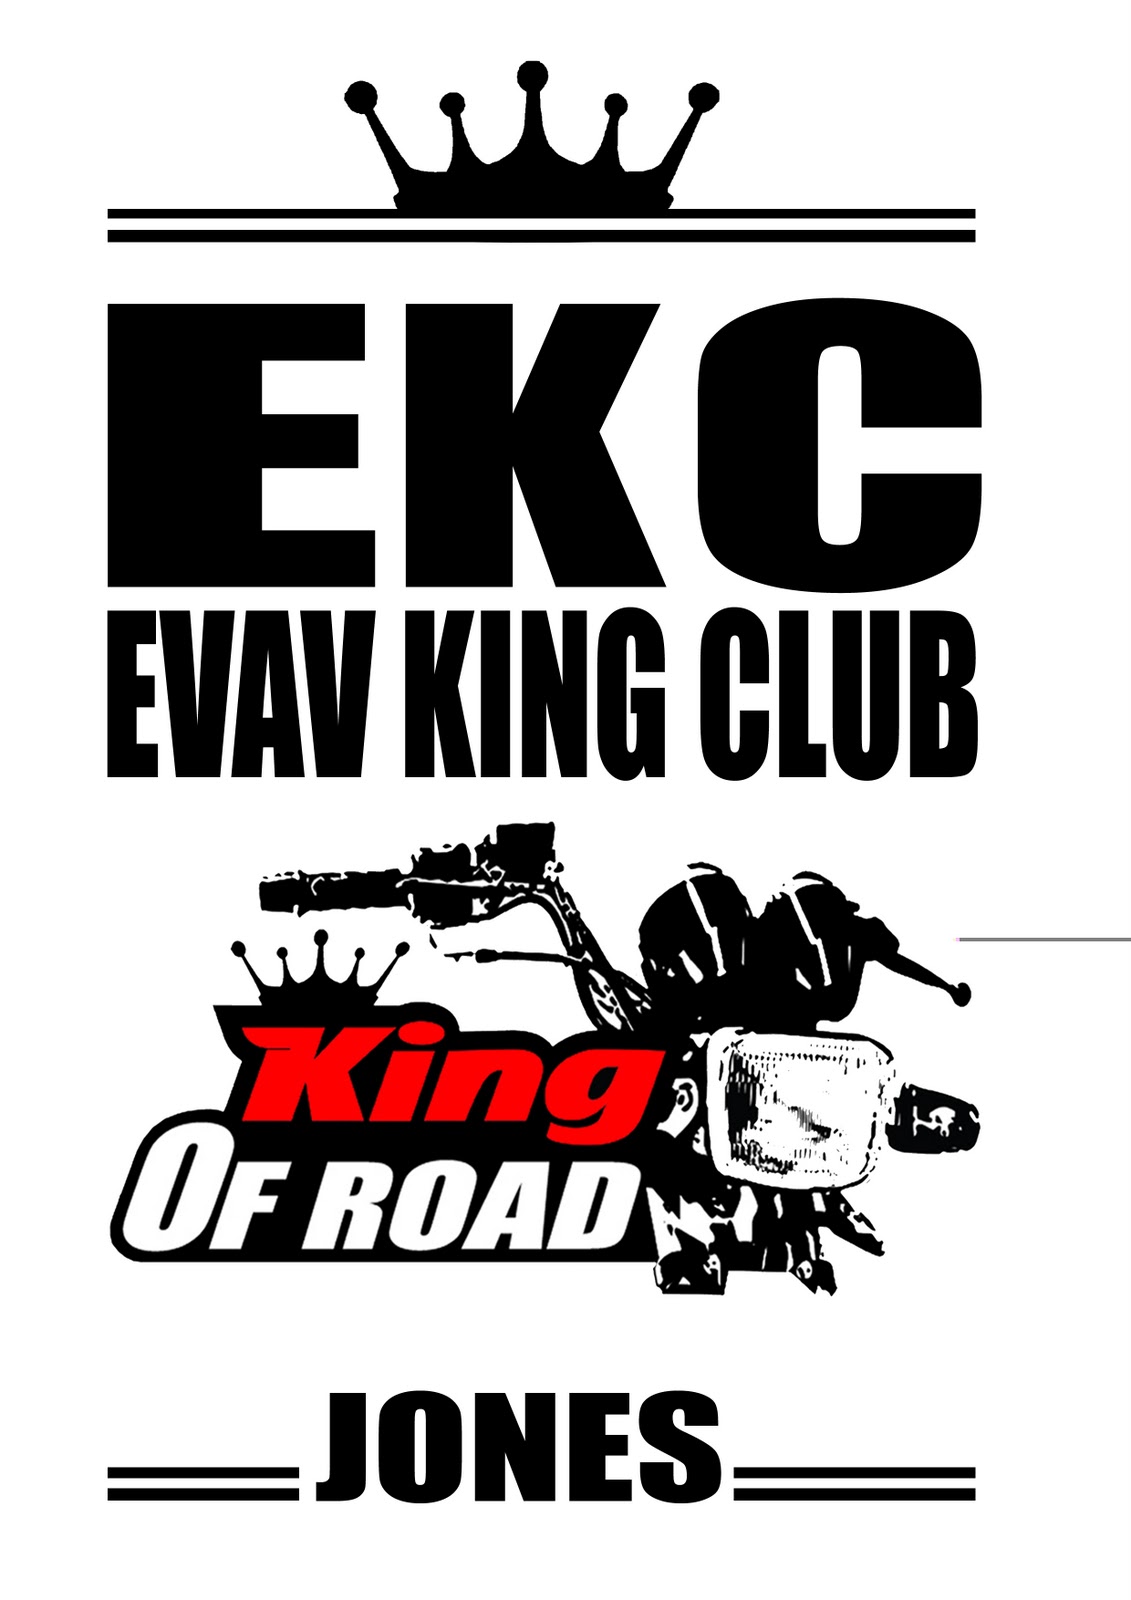 Evav King Club Photos